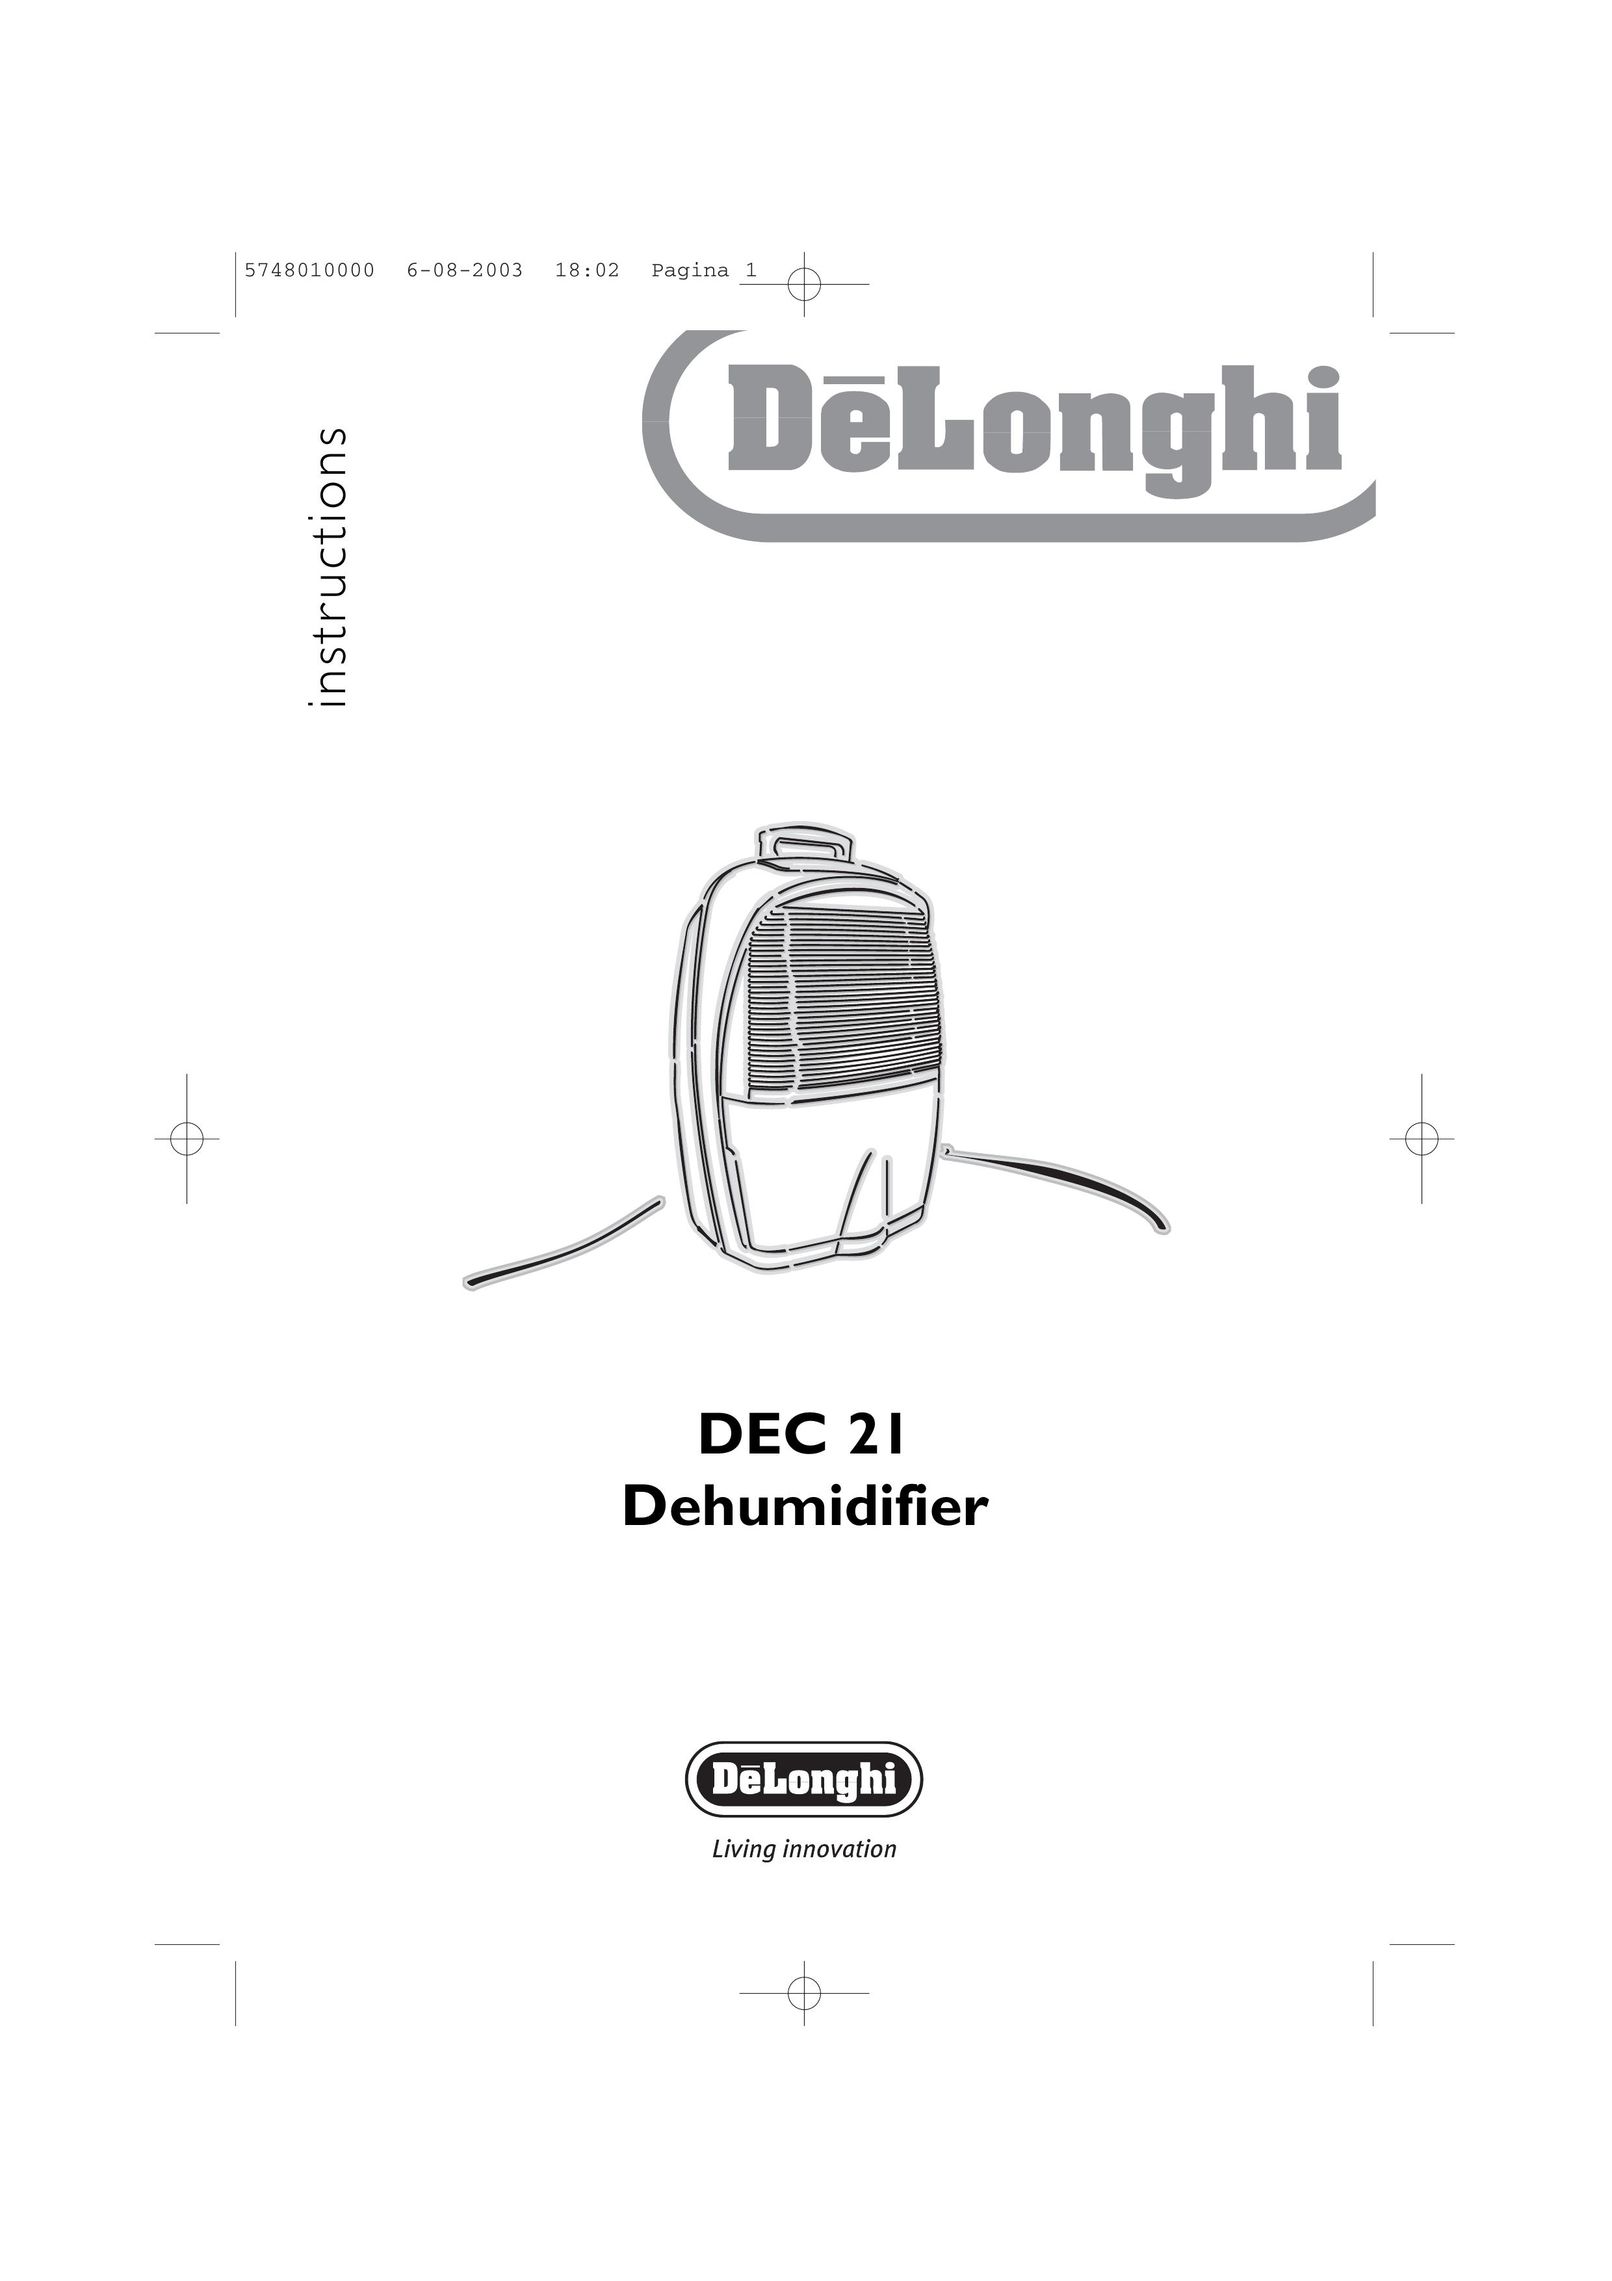 DeLonghi DEC 21 Dehumidifier User Manual